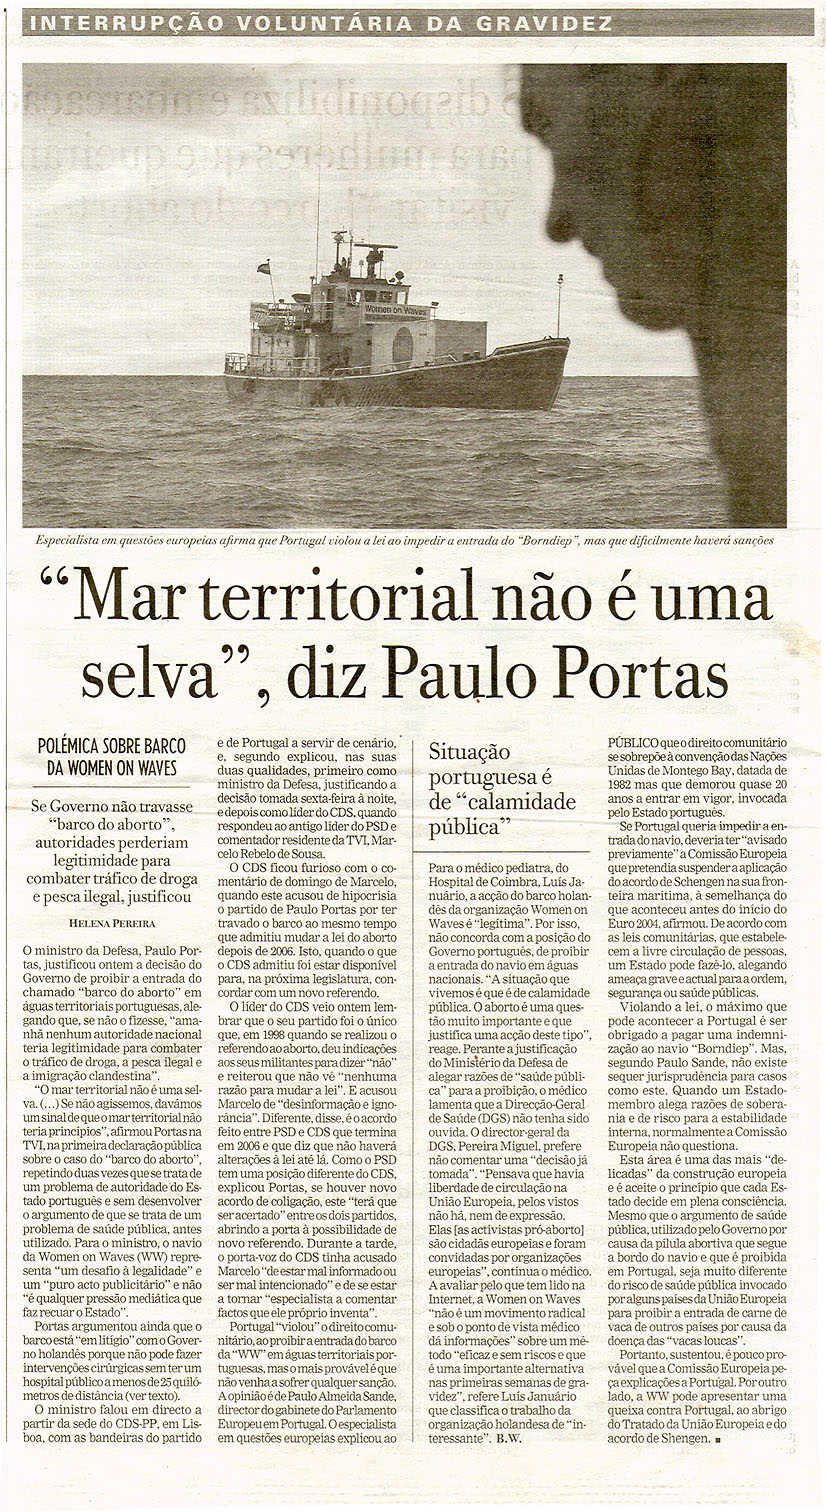 "Mar territorial não é uma selva", diz Paulo Portas